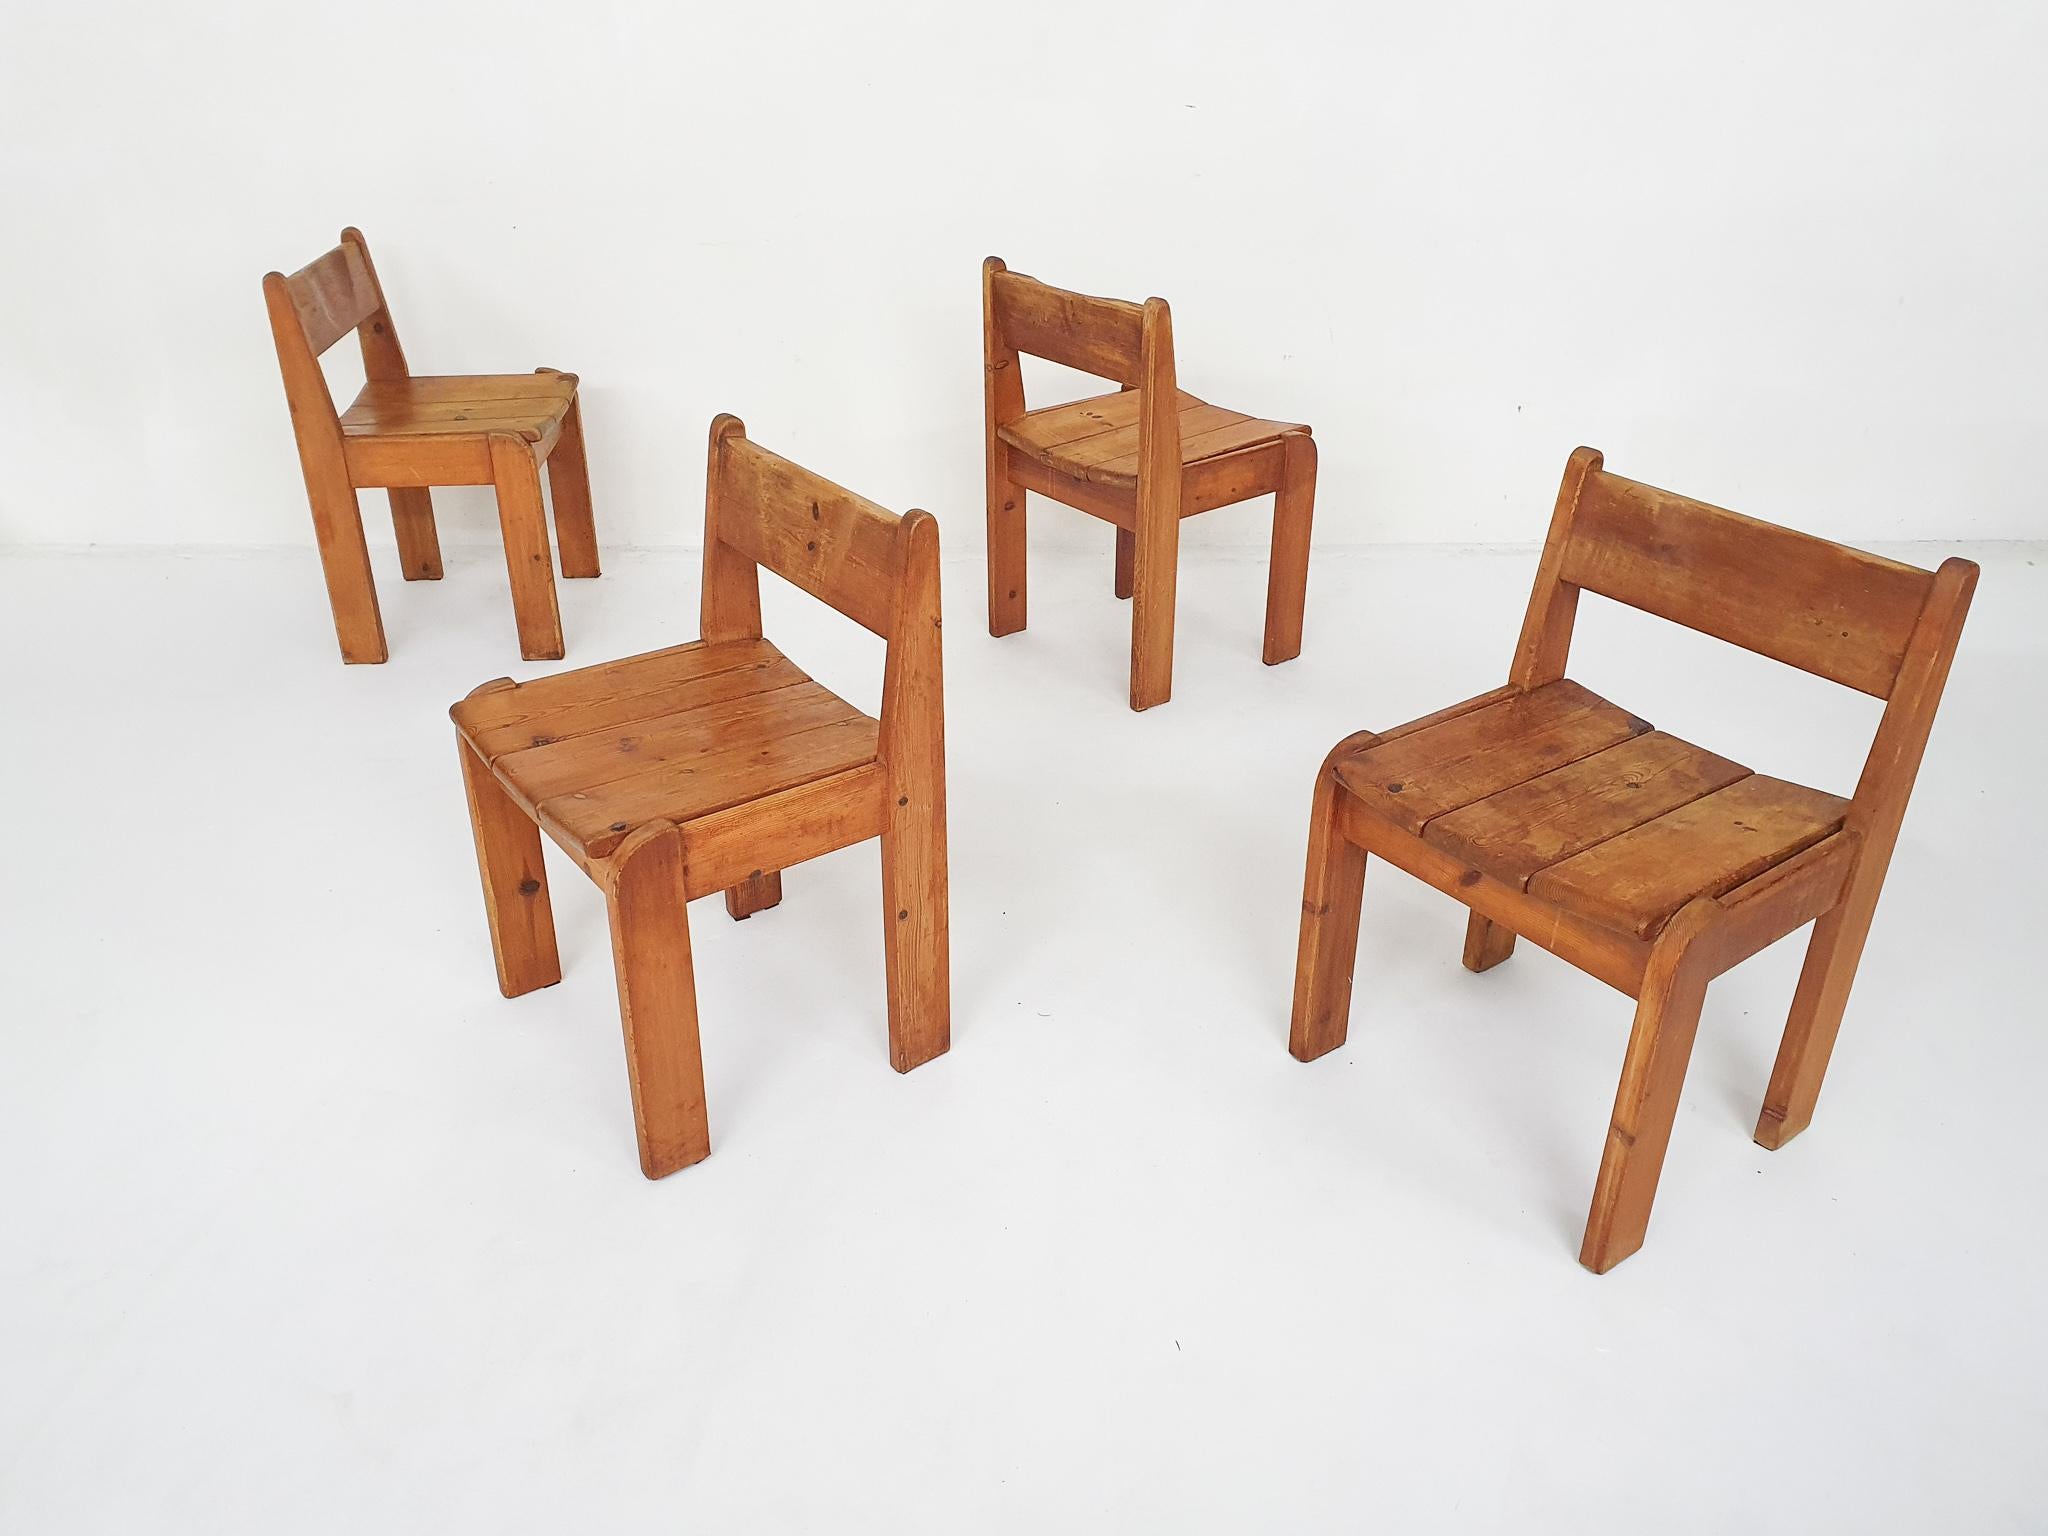 Chaises de salle à manger en pin massif par Ate van Apeldoorn.
Nous disposons également d'une table de salle à manger en bois de pin assortie.
Les chaises sont en état d'usage.